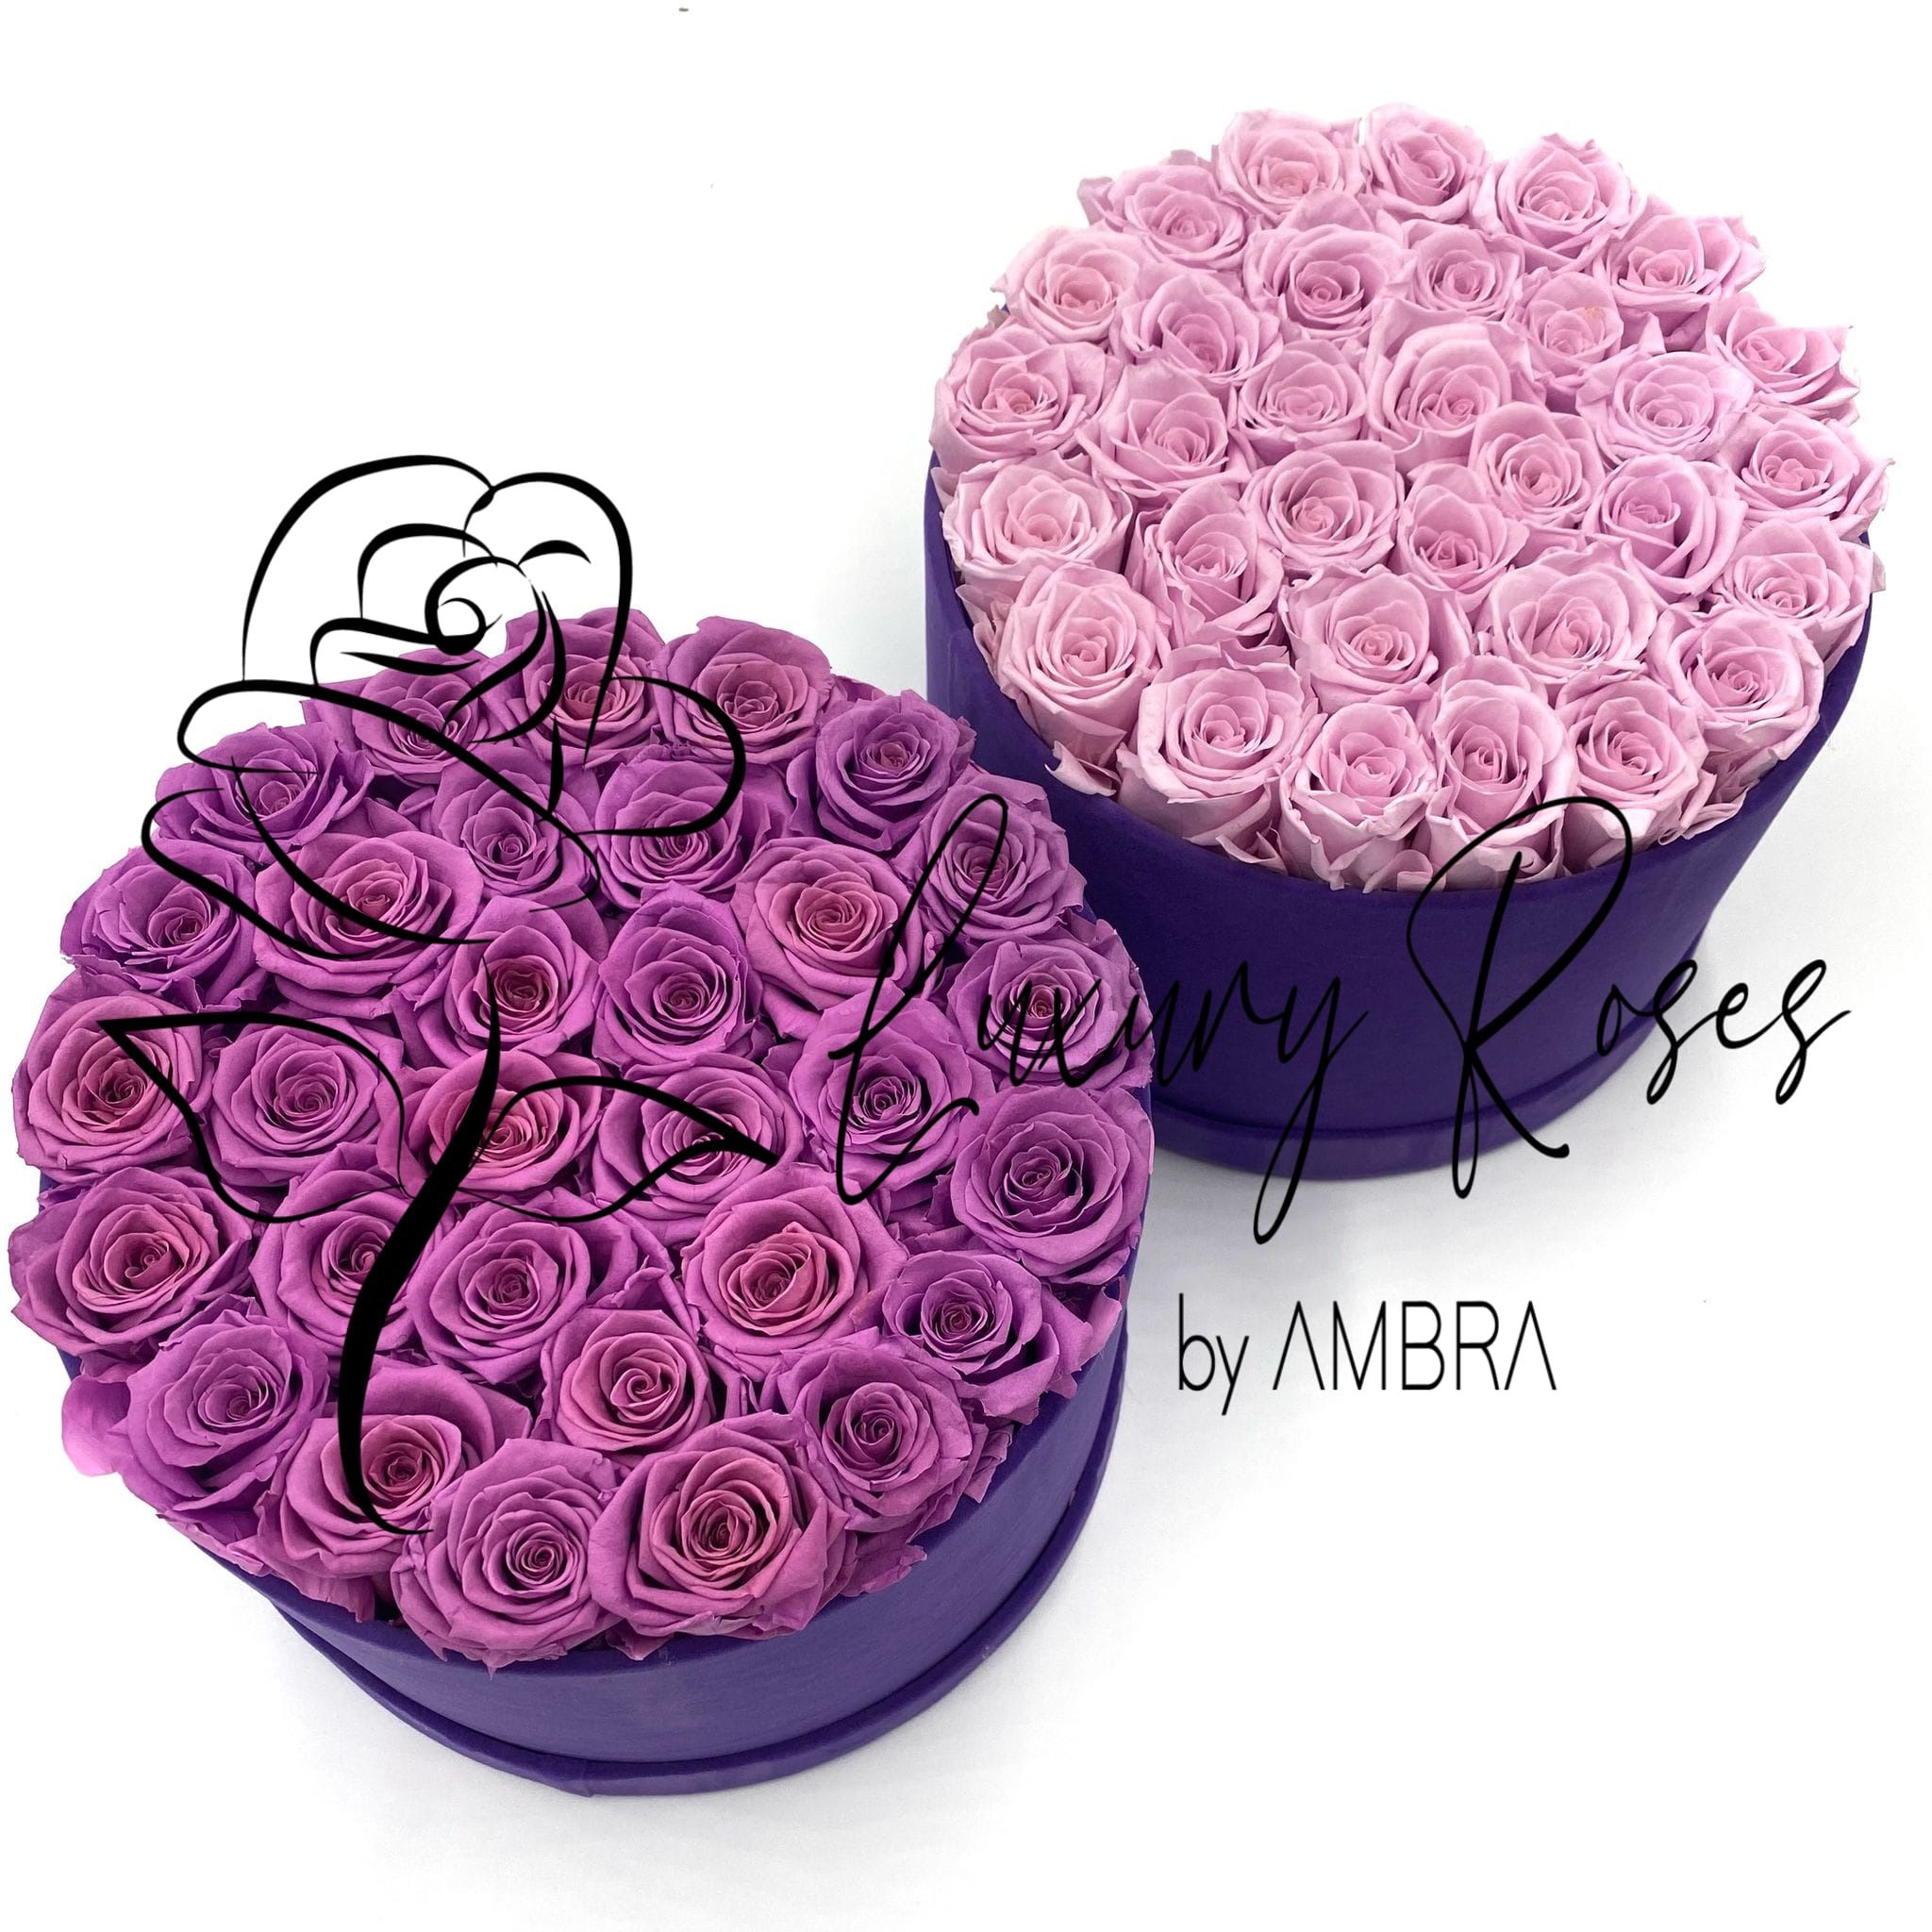 Eternal velvet box roses real preserved roses purple flowers immortal roses anniversary birthday immortal lasting Velvet Box Present